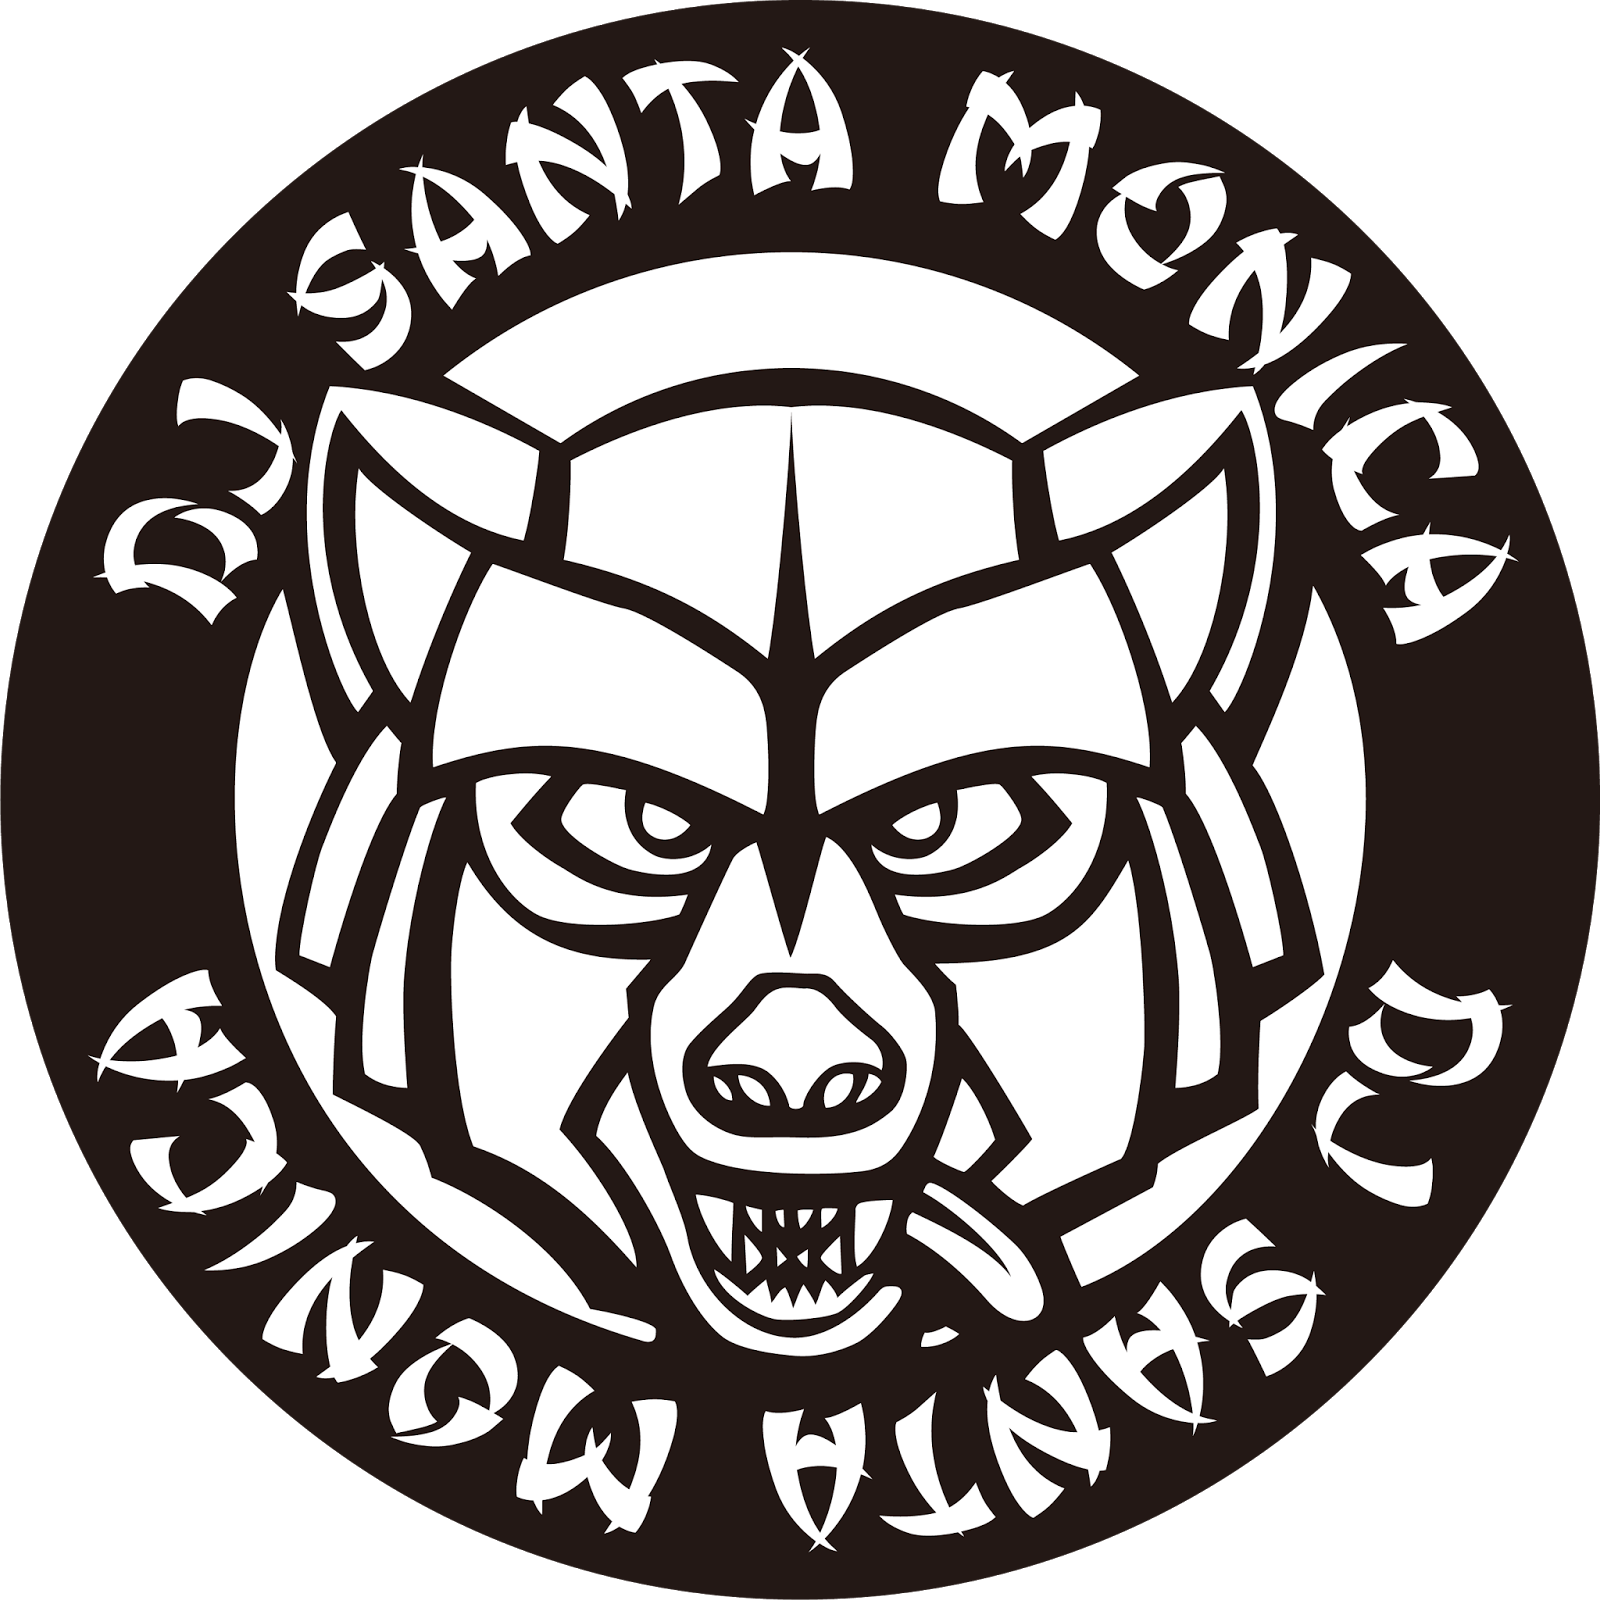 Logodol 全てが高画質 背景透過なアーティストのロゴをお届けするブログ Dj Santa Monica Djサンタ モニカ のコースターとか作れそうなロゴを再現